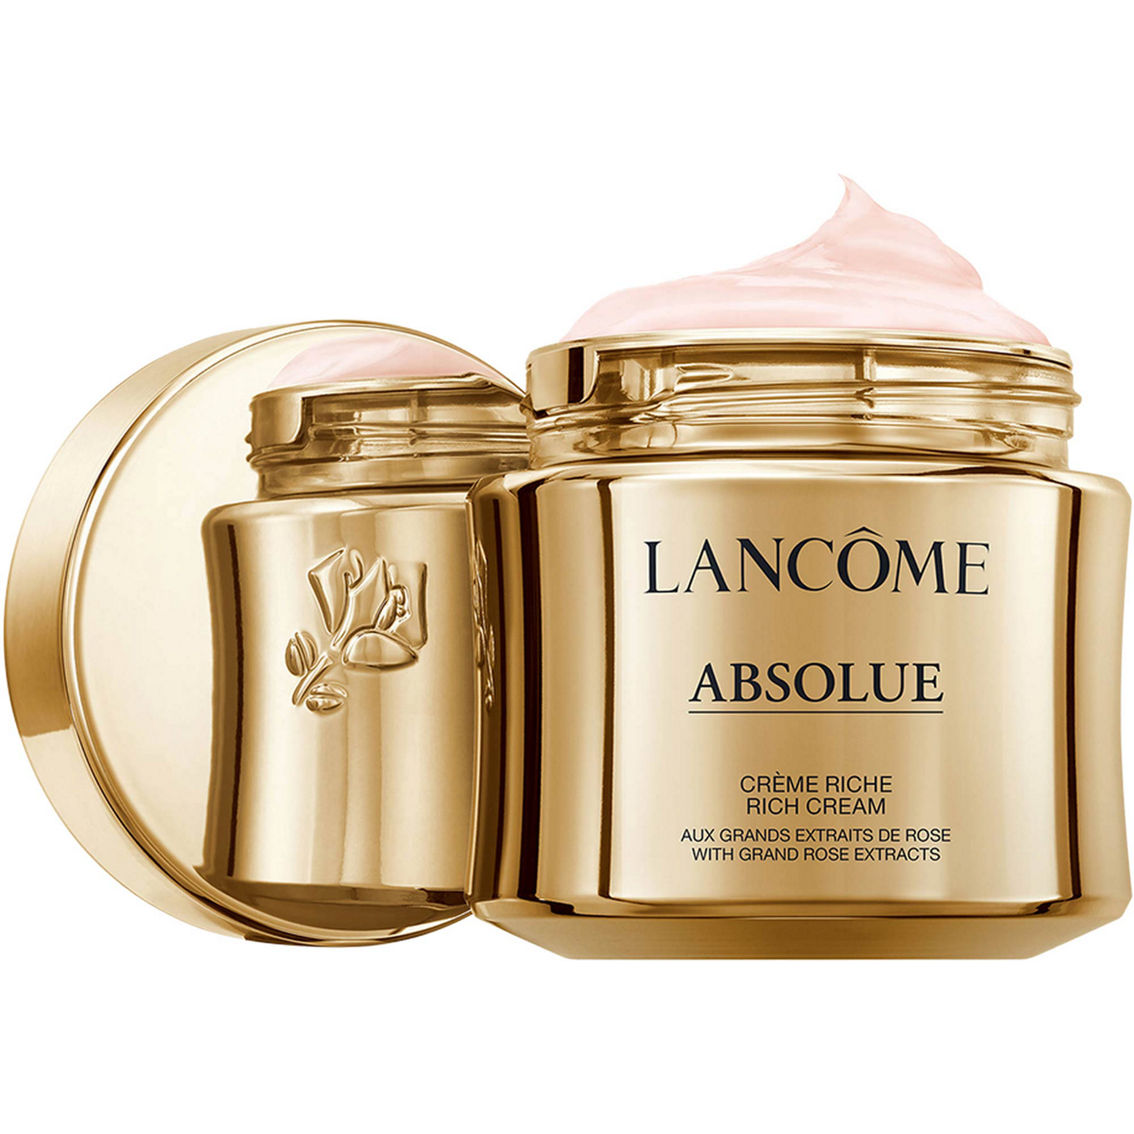 Lancome APC Rich Cream - Image 2 of 4